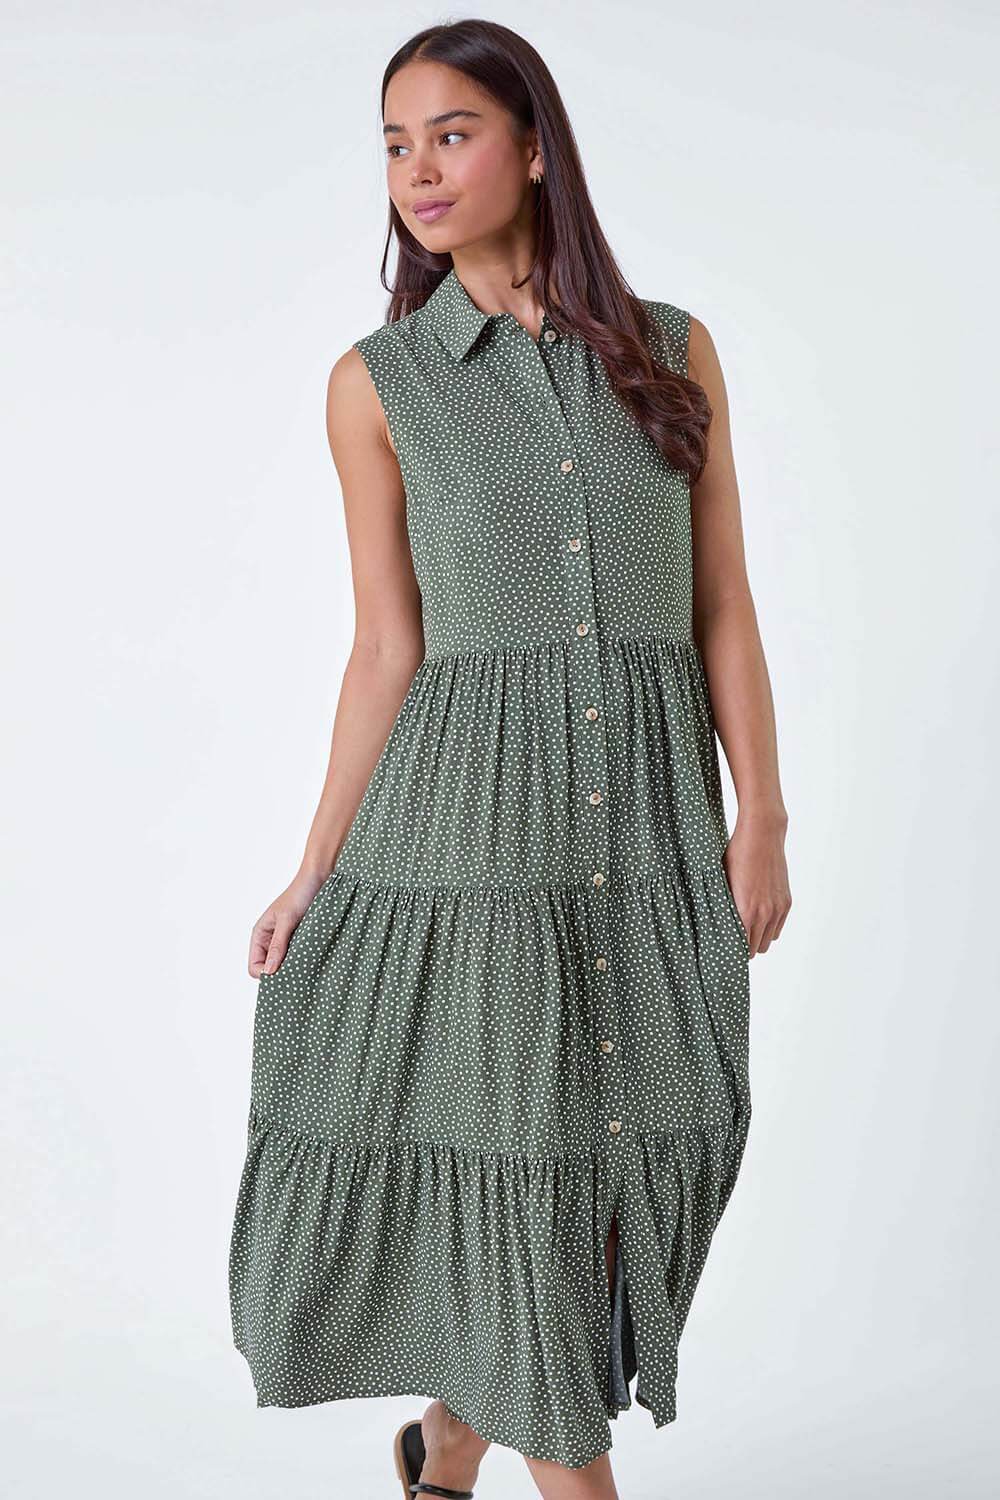 KHAKI Petite Polka Dot Midi Shirt Dress, Image 2 of 5